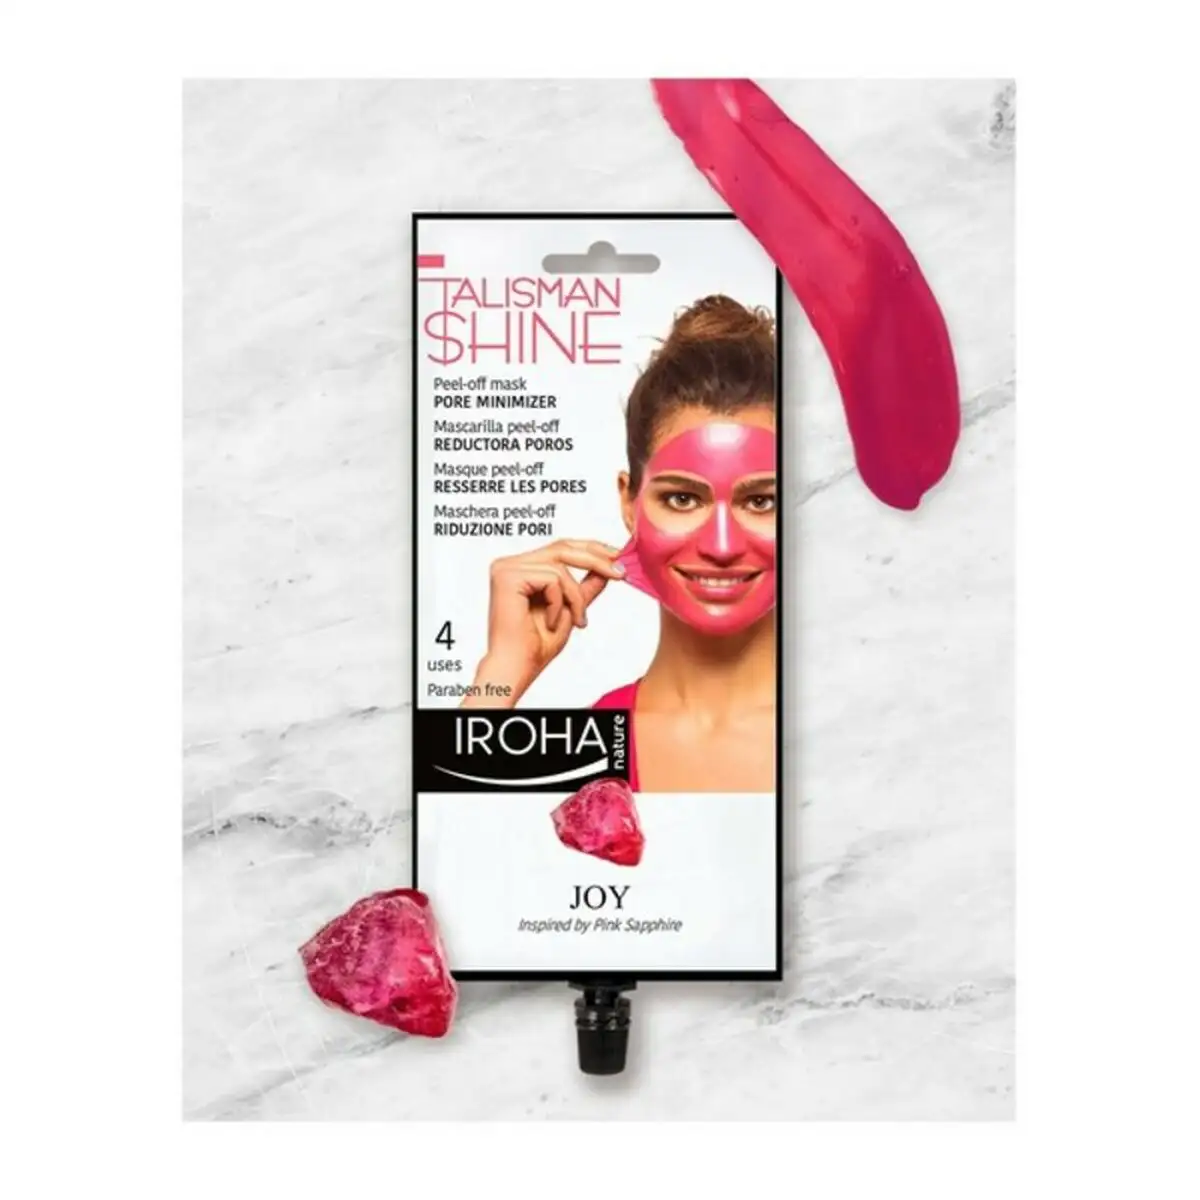 Masque facial peel off pink sapphire pore minimizer iroha_9534. DIAYTAR SENEGAL - Là où Chaque Achat a du Sens. Explorez notre gamme et choisissez des produits qui racontent une histoire, du traditionnel au contemporain.